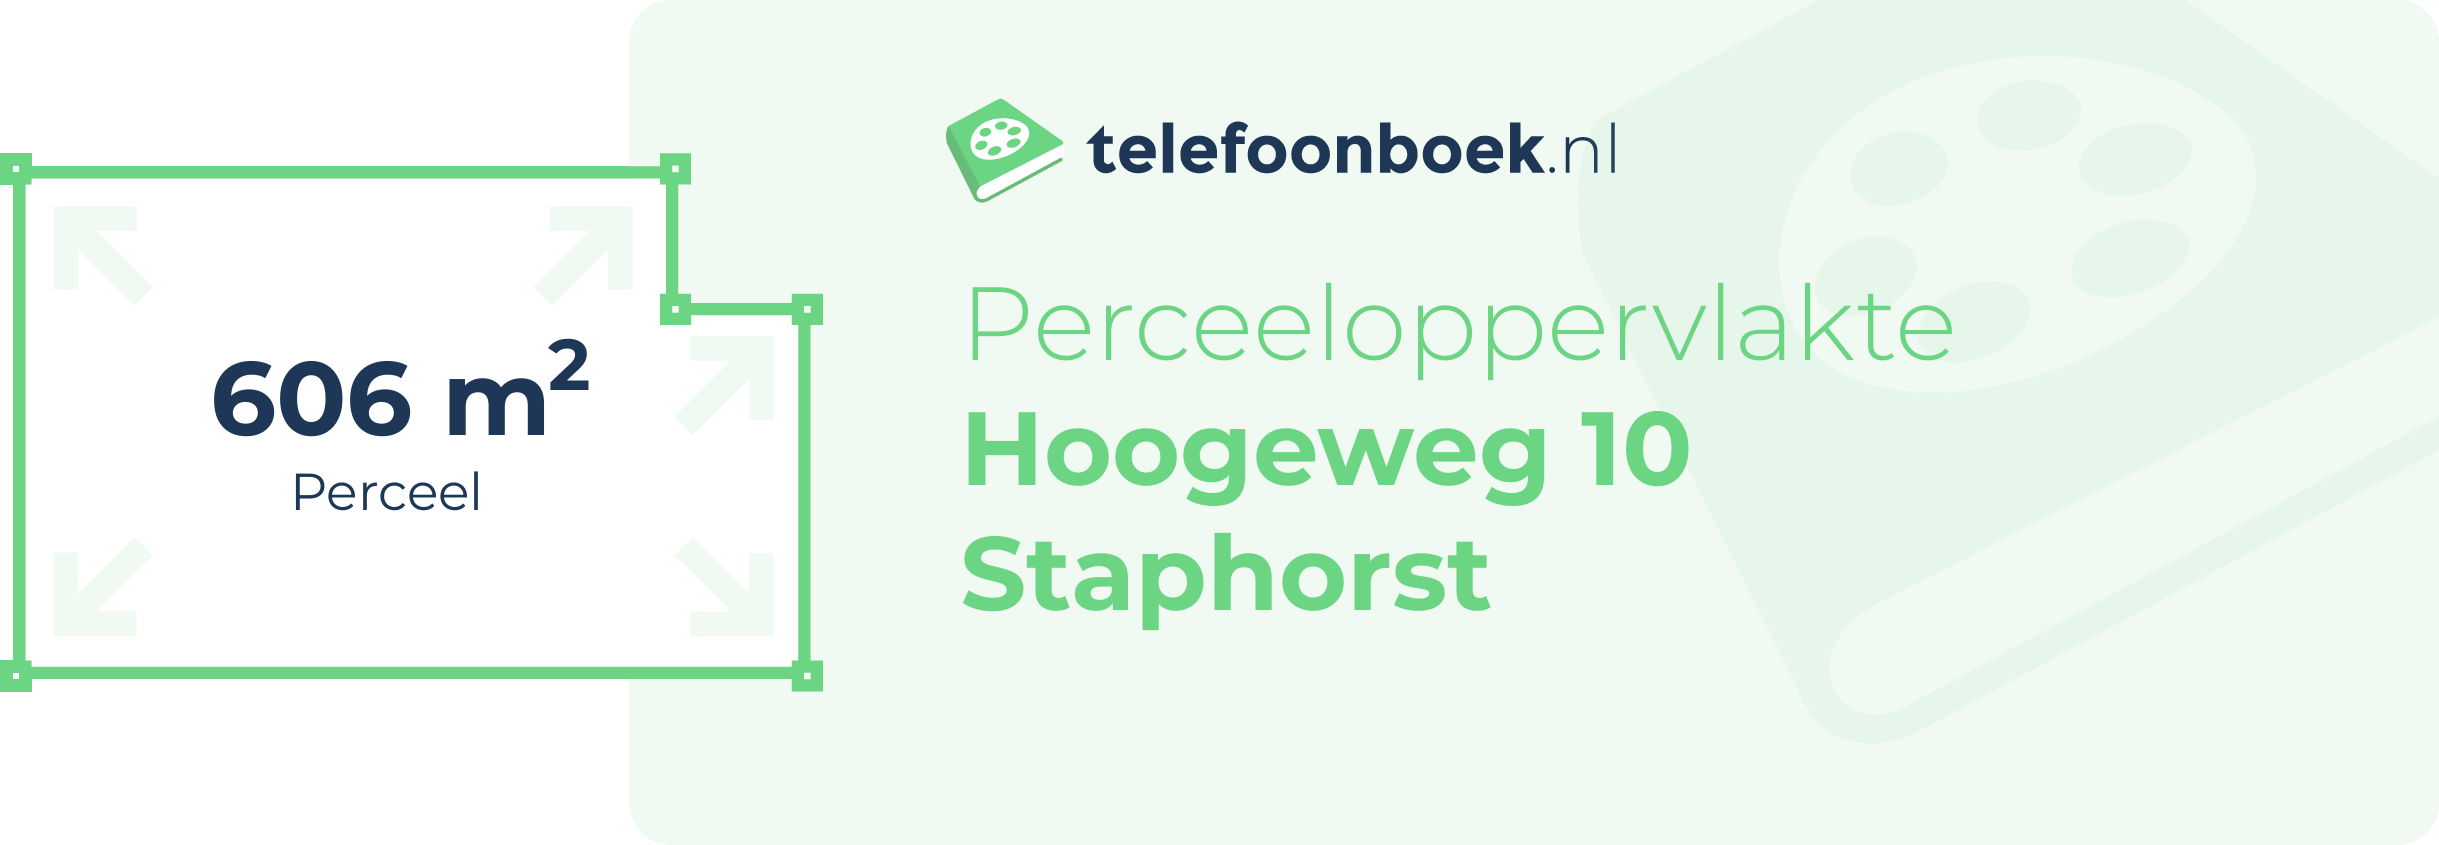 Perceeloppervlakte Hoogeweg 10 Staphorst